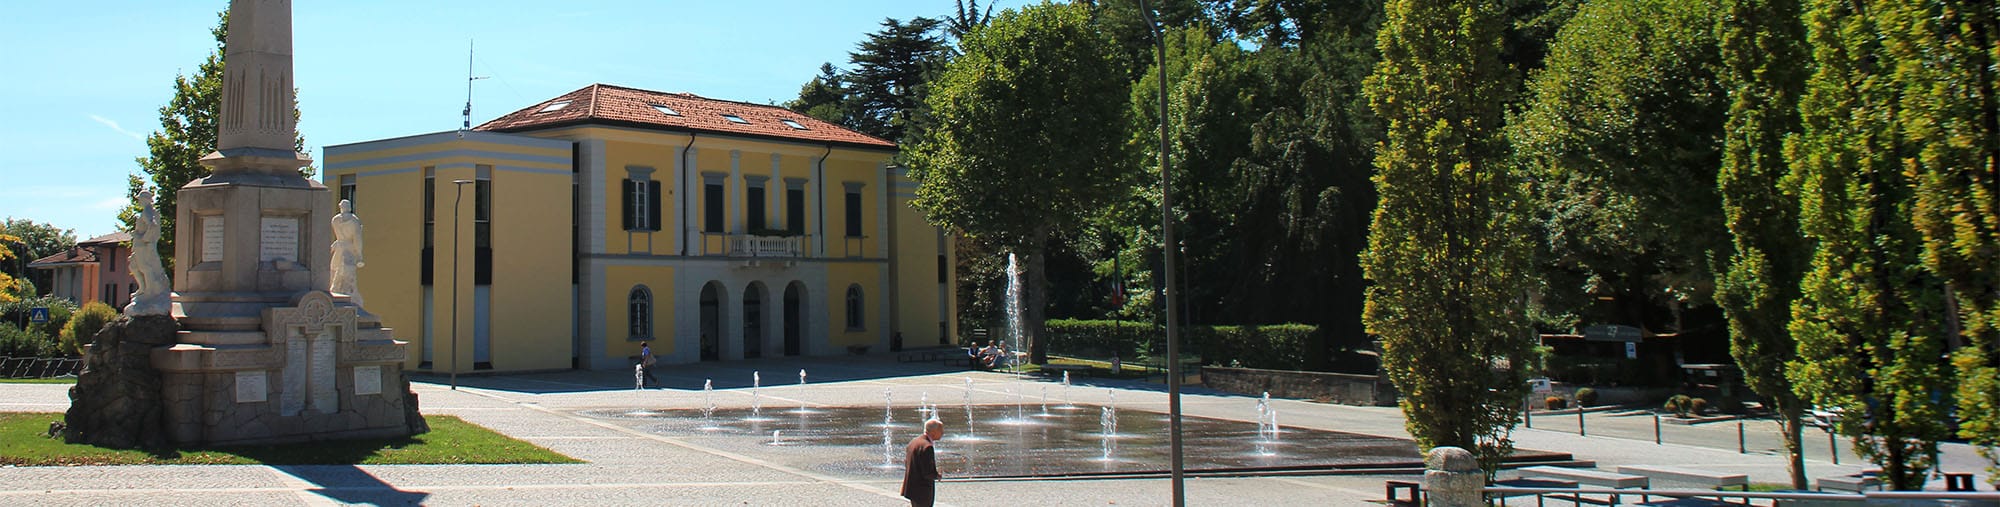 San Fermo Piazza